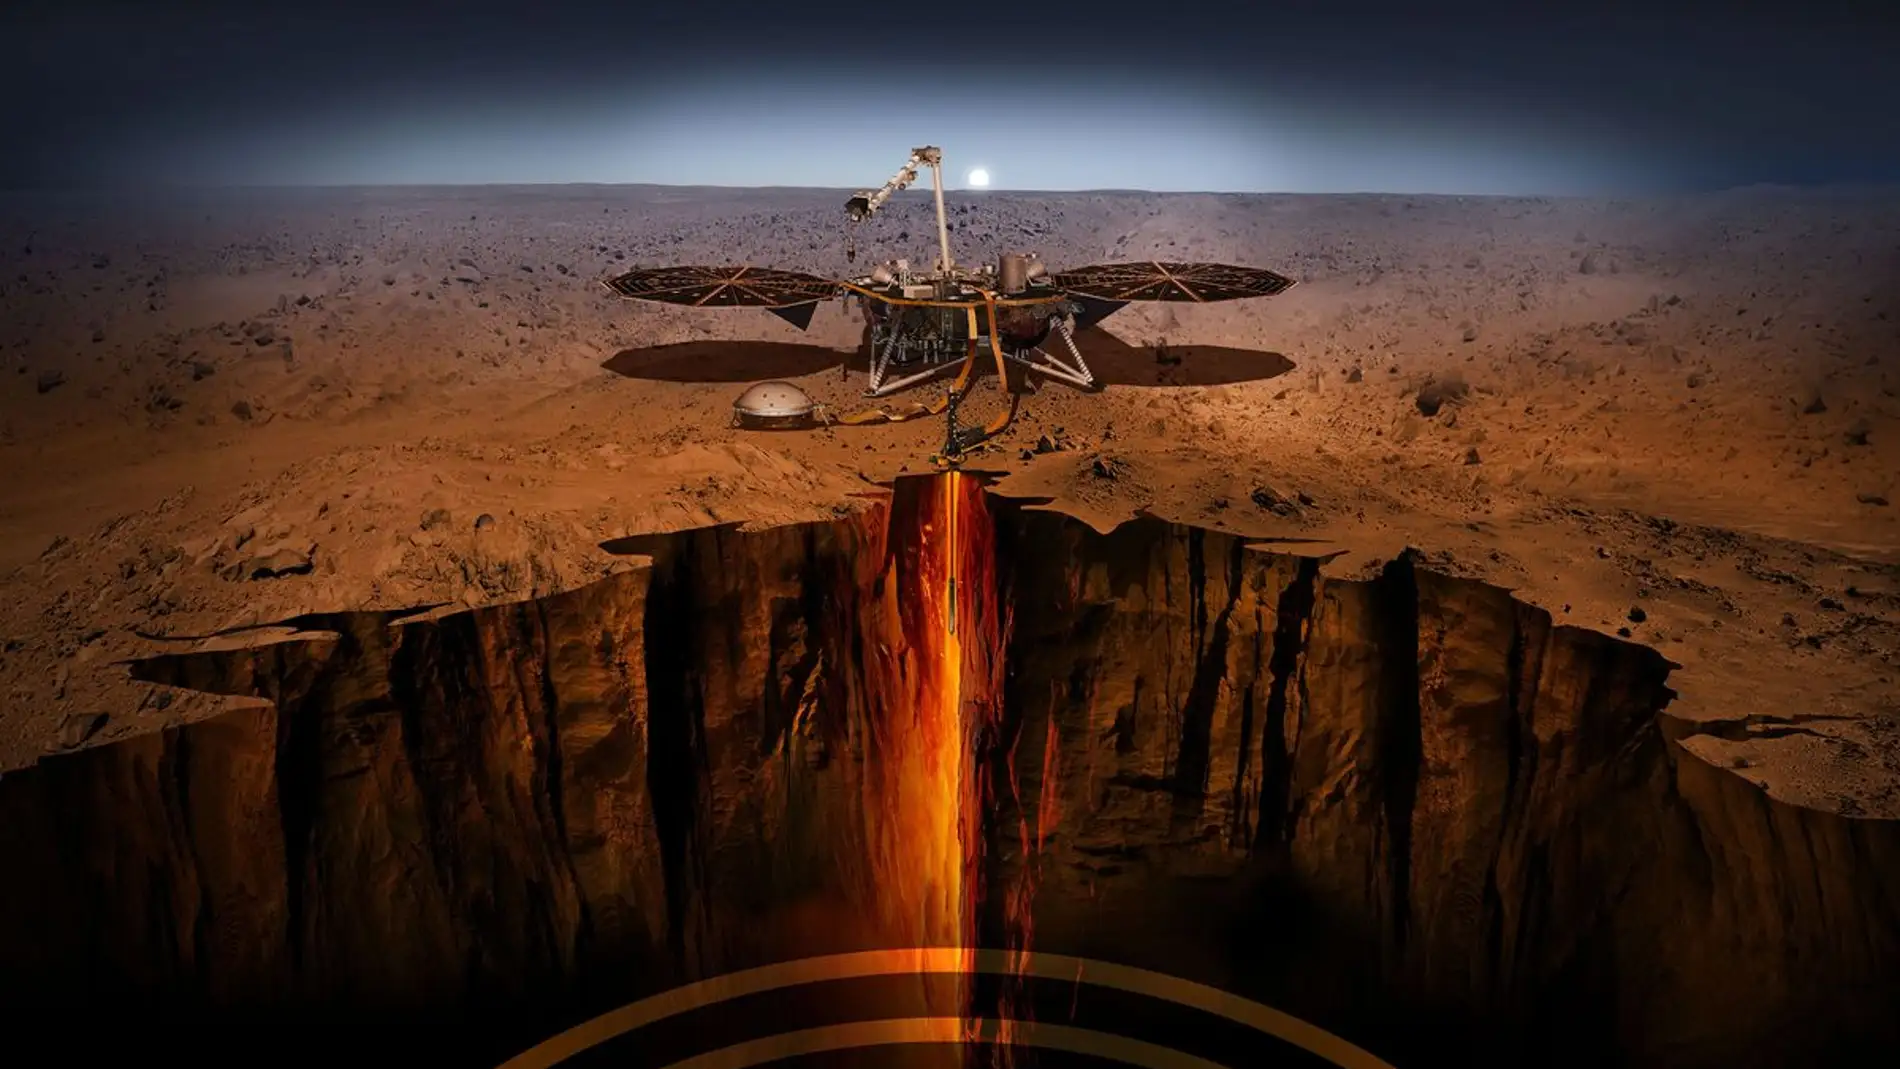 Siete minutos de terror para explorar las profundidades de Marte